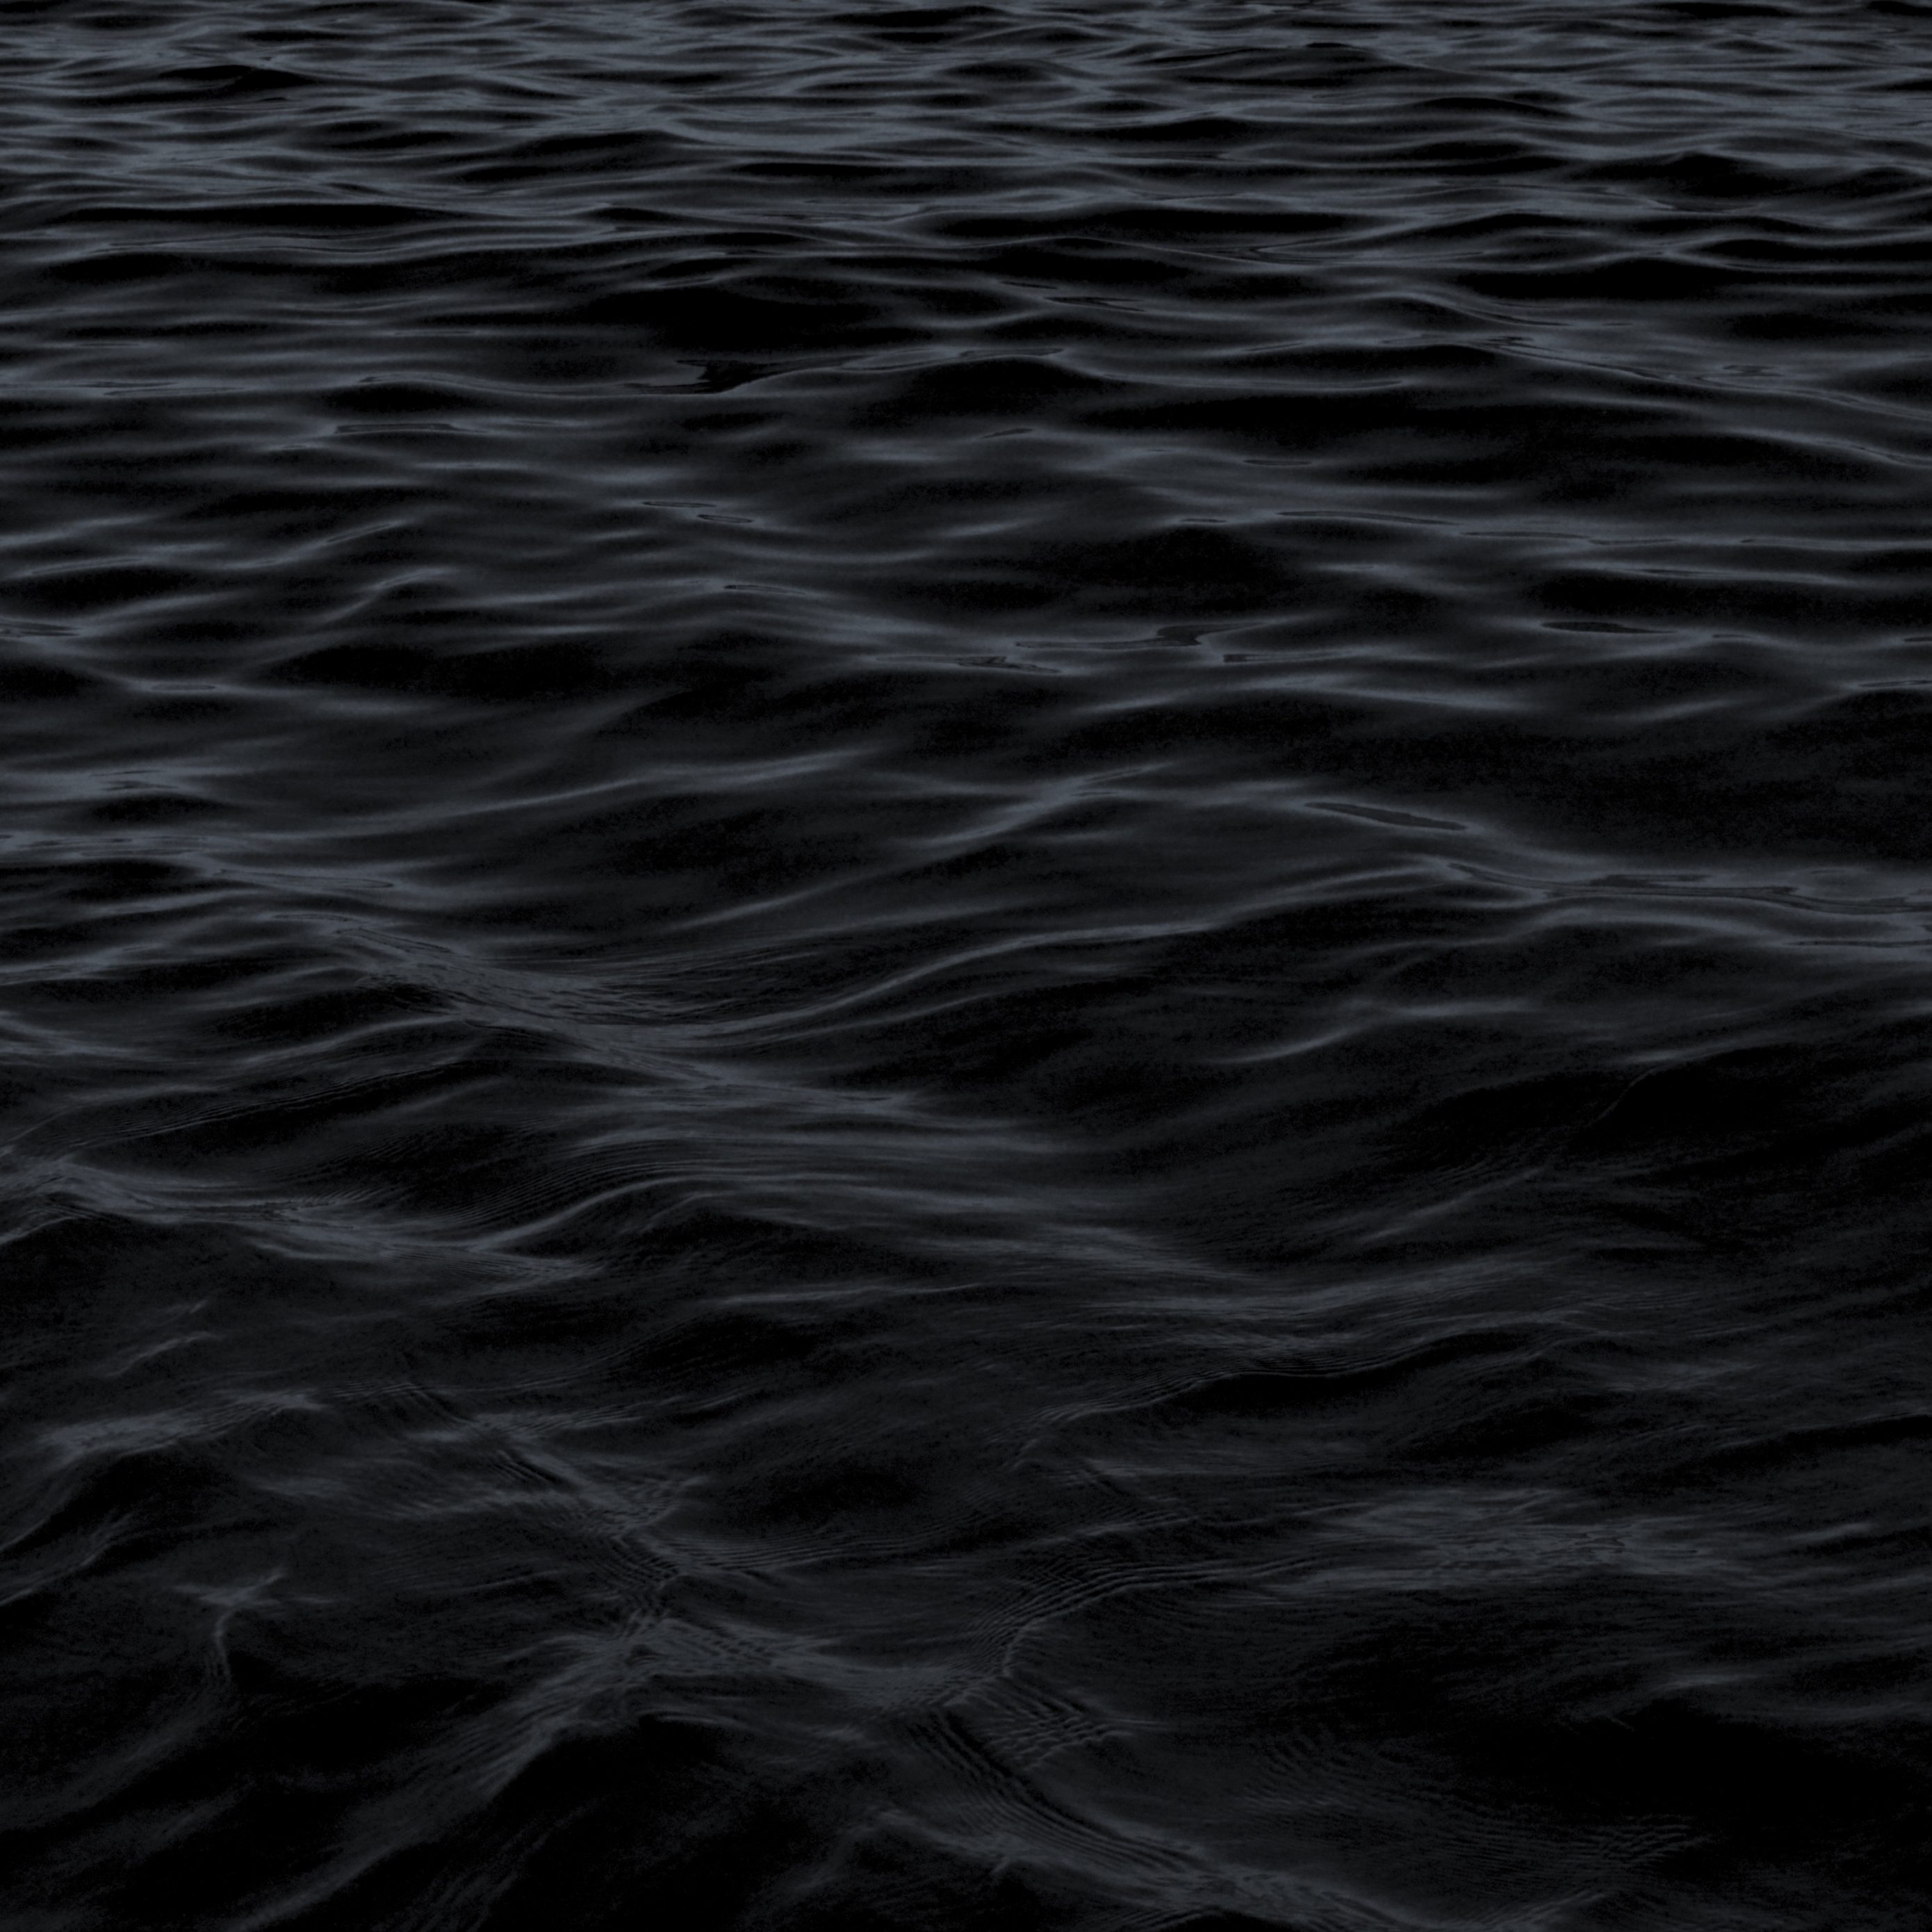 2780x2780 Parallax wallpaper 4k Dark Water Waves Sea Pattern iPad Wallpaper 2780x2780 pixels resolution